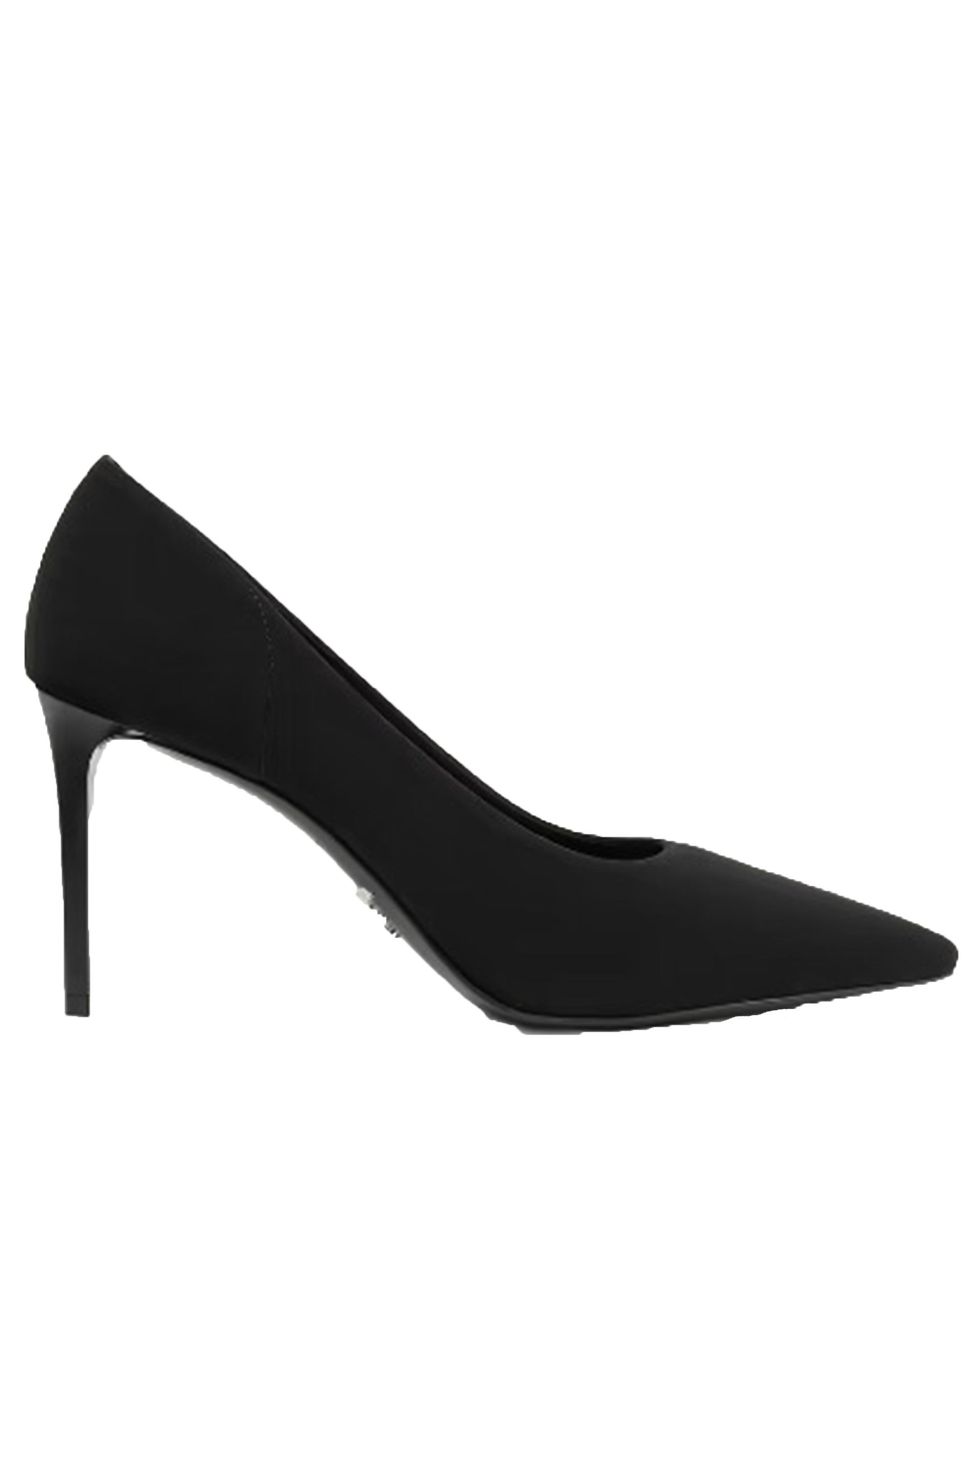 Prada black heels 